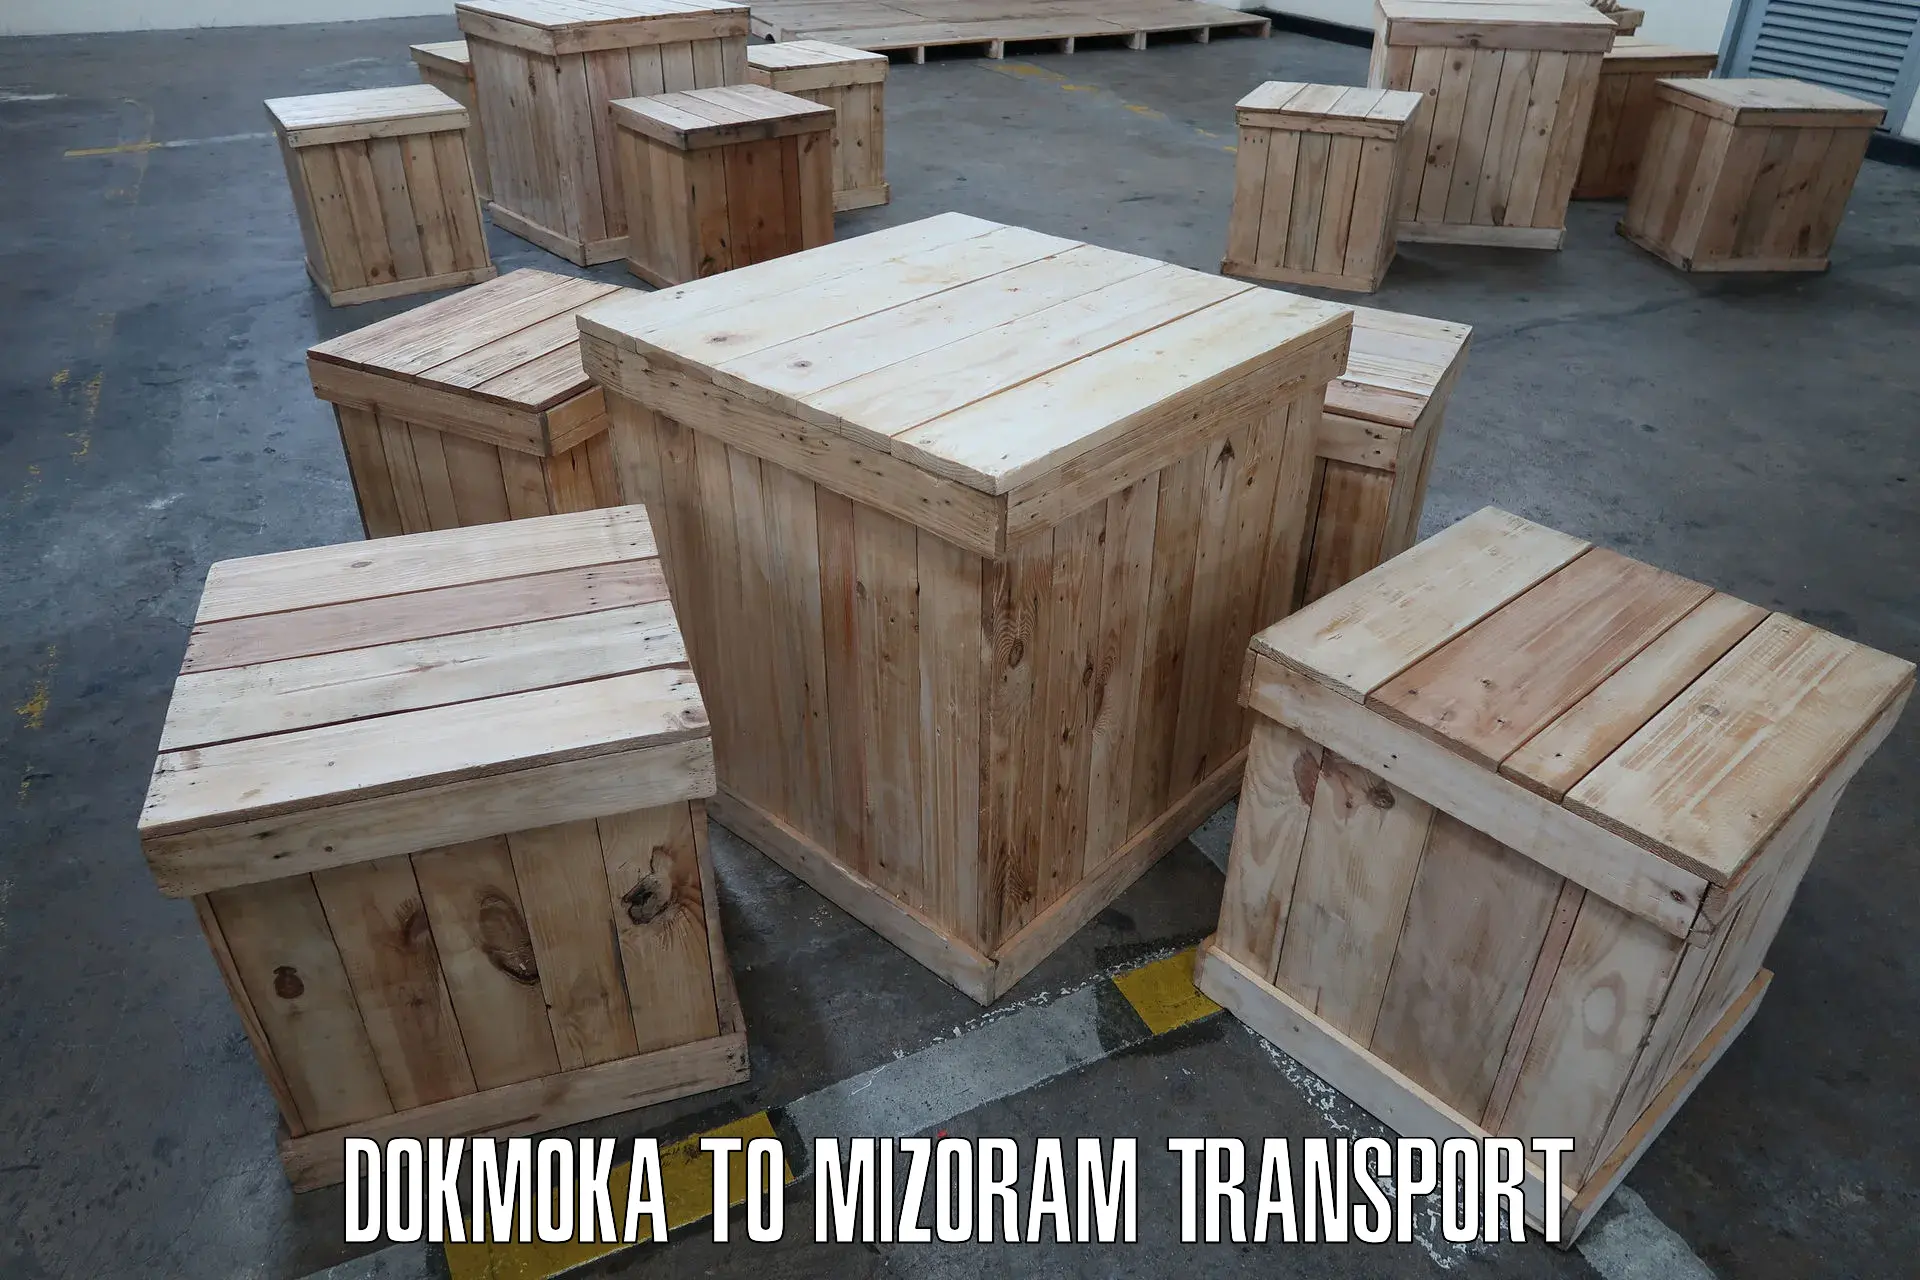 Transport services Dokmoka to Khawzawl